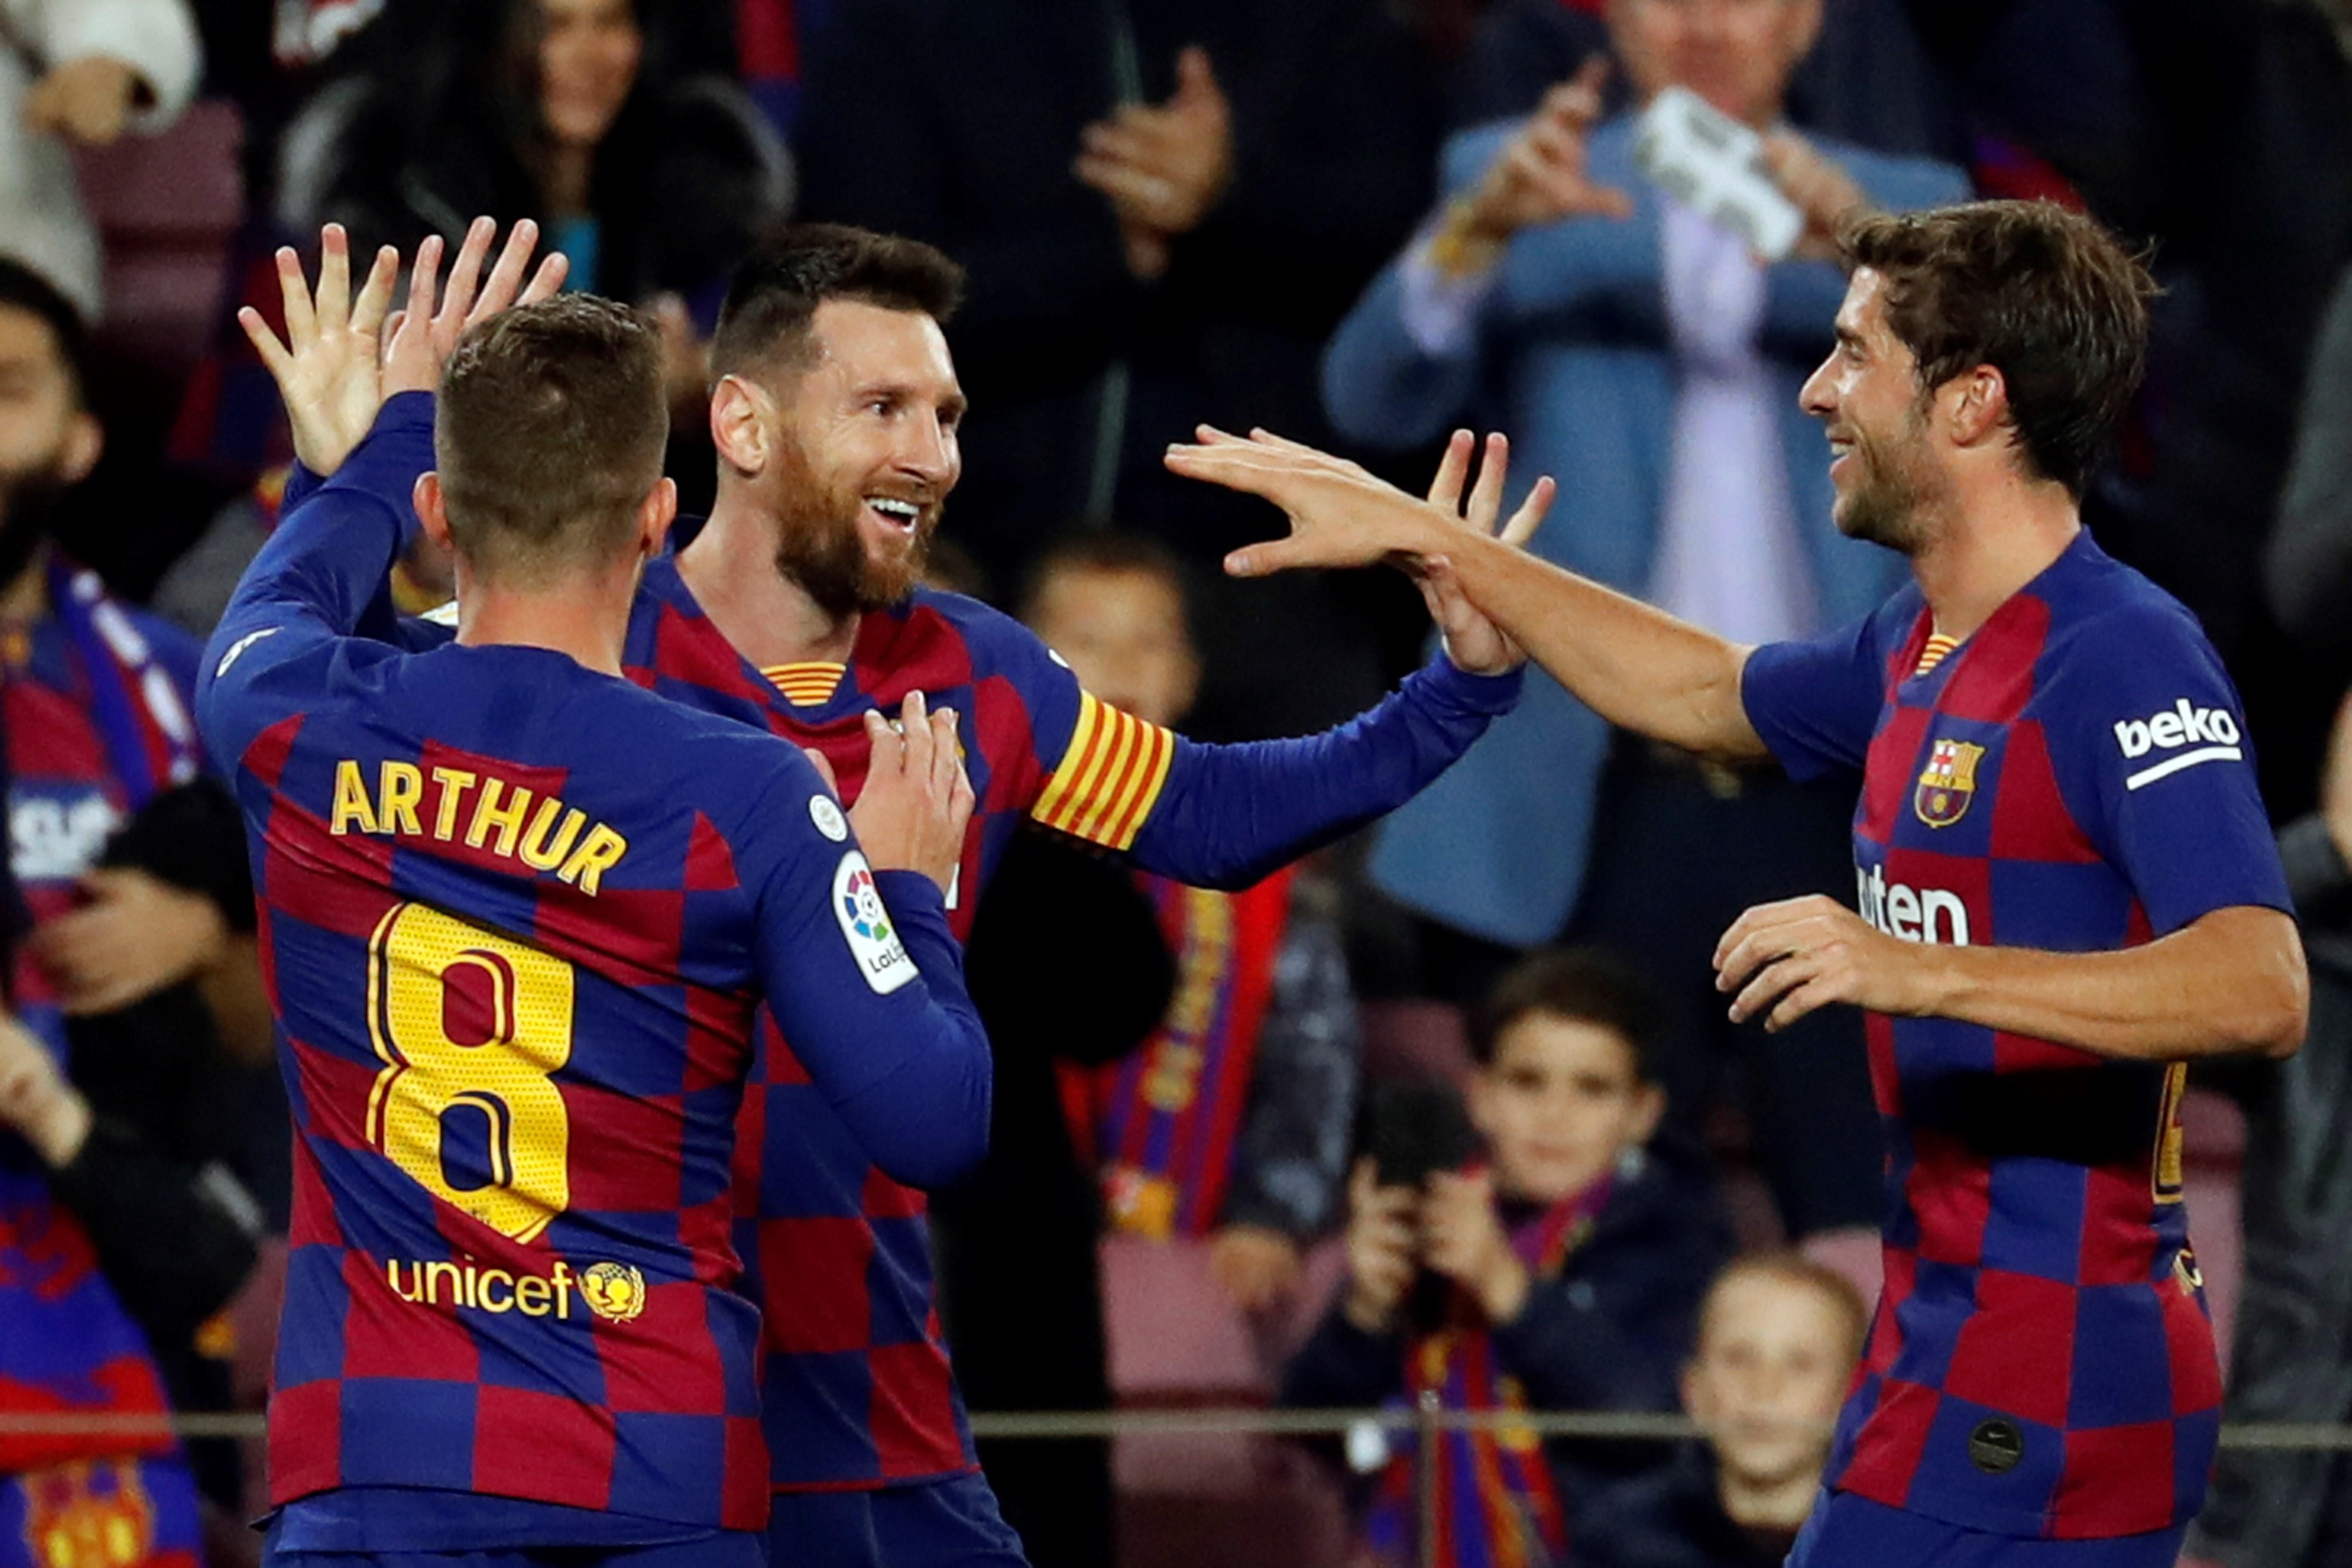 El delantero argentino del FC Barcelona Lionel Messi (c) celebra con sus compañeros Arthur Melo (i) y Sergi Roberto su gol, el segundo del equipo, durante el partido ante el RC Celta de Vigo. (Foto Prensa Libre: EFE)